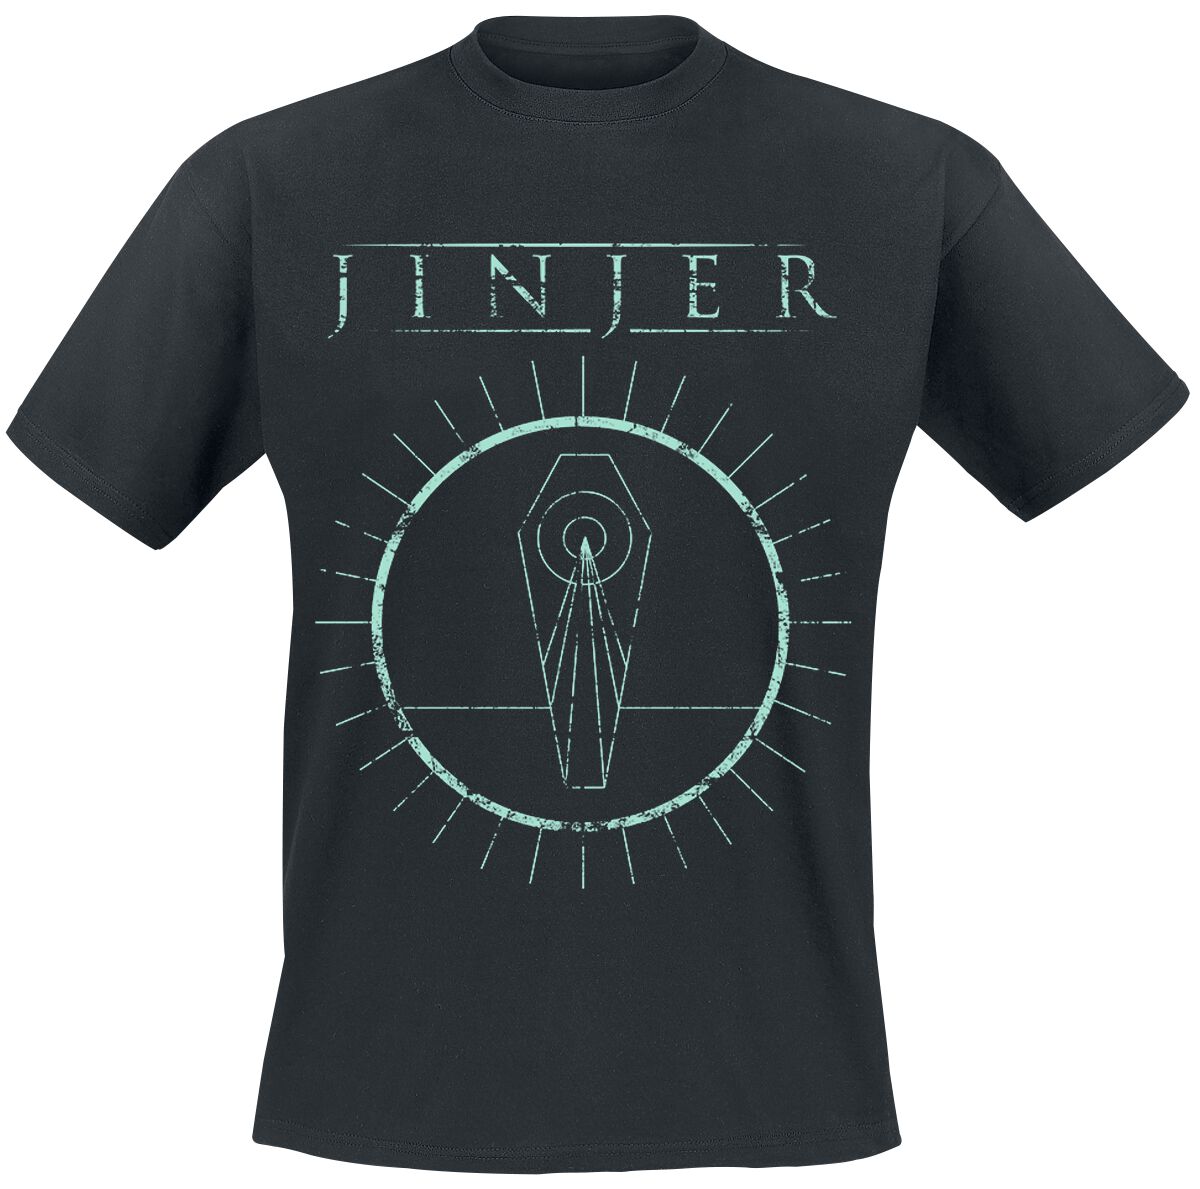 Jinjer T-Shirt - Pausing Death - XXL - für Männer - Größe XXL - schwarz  - Lizenziertes Merchandise!